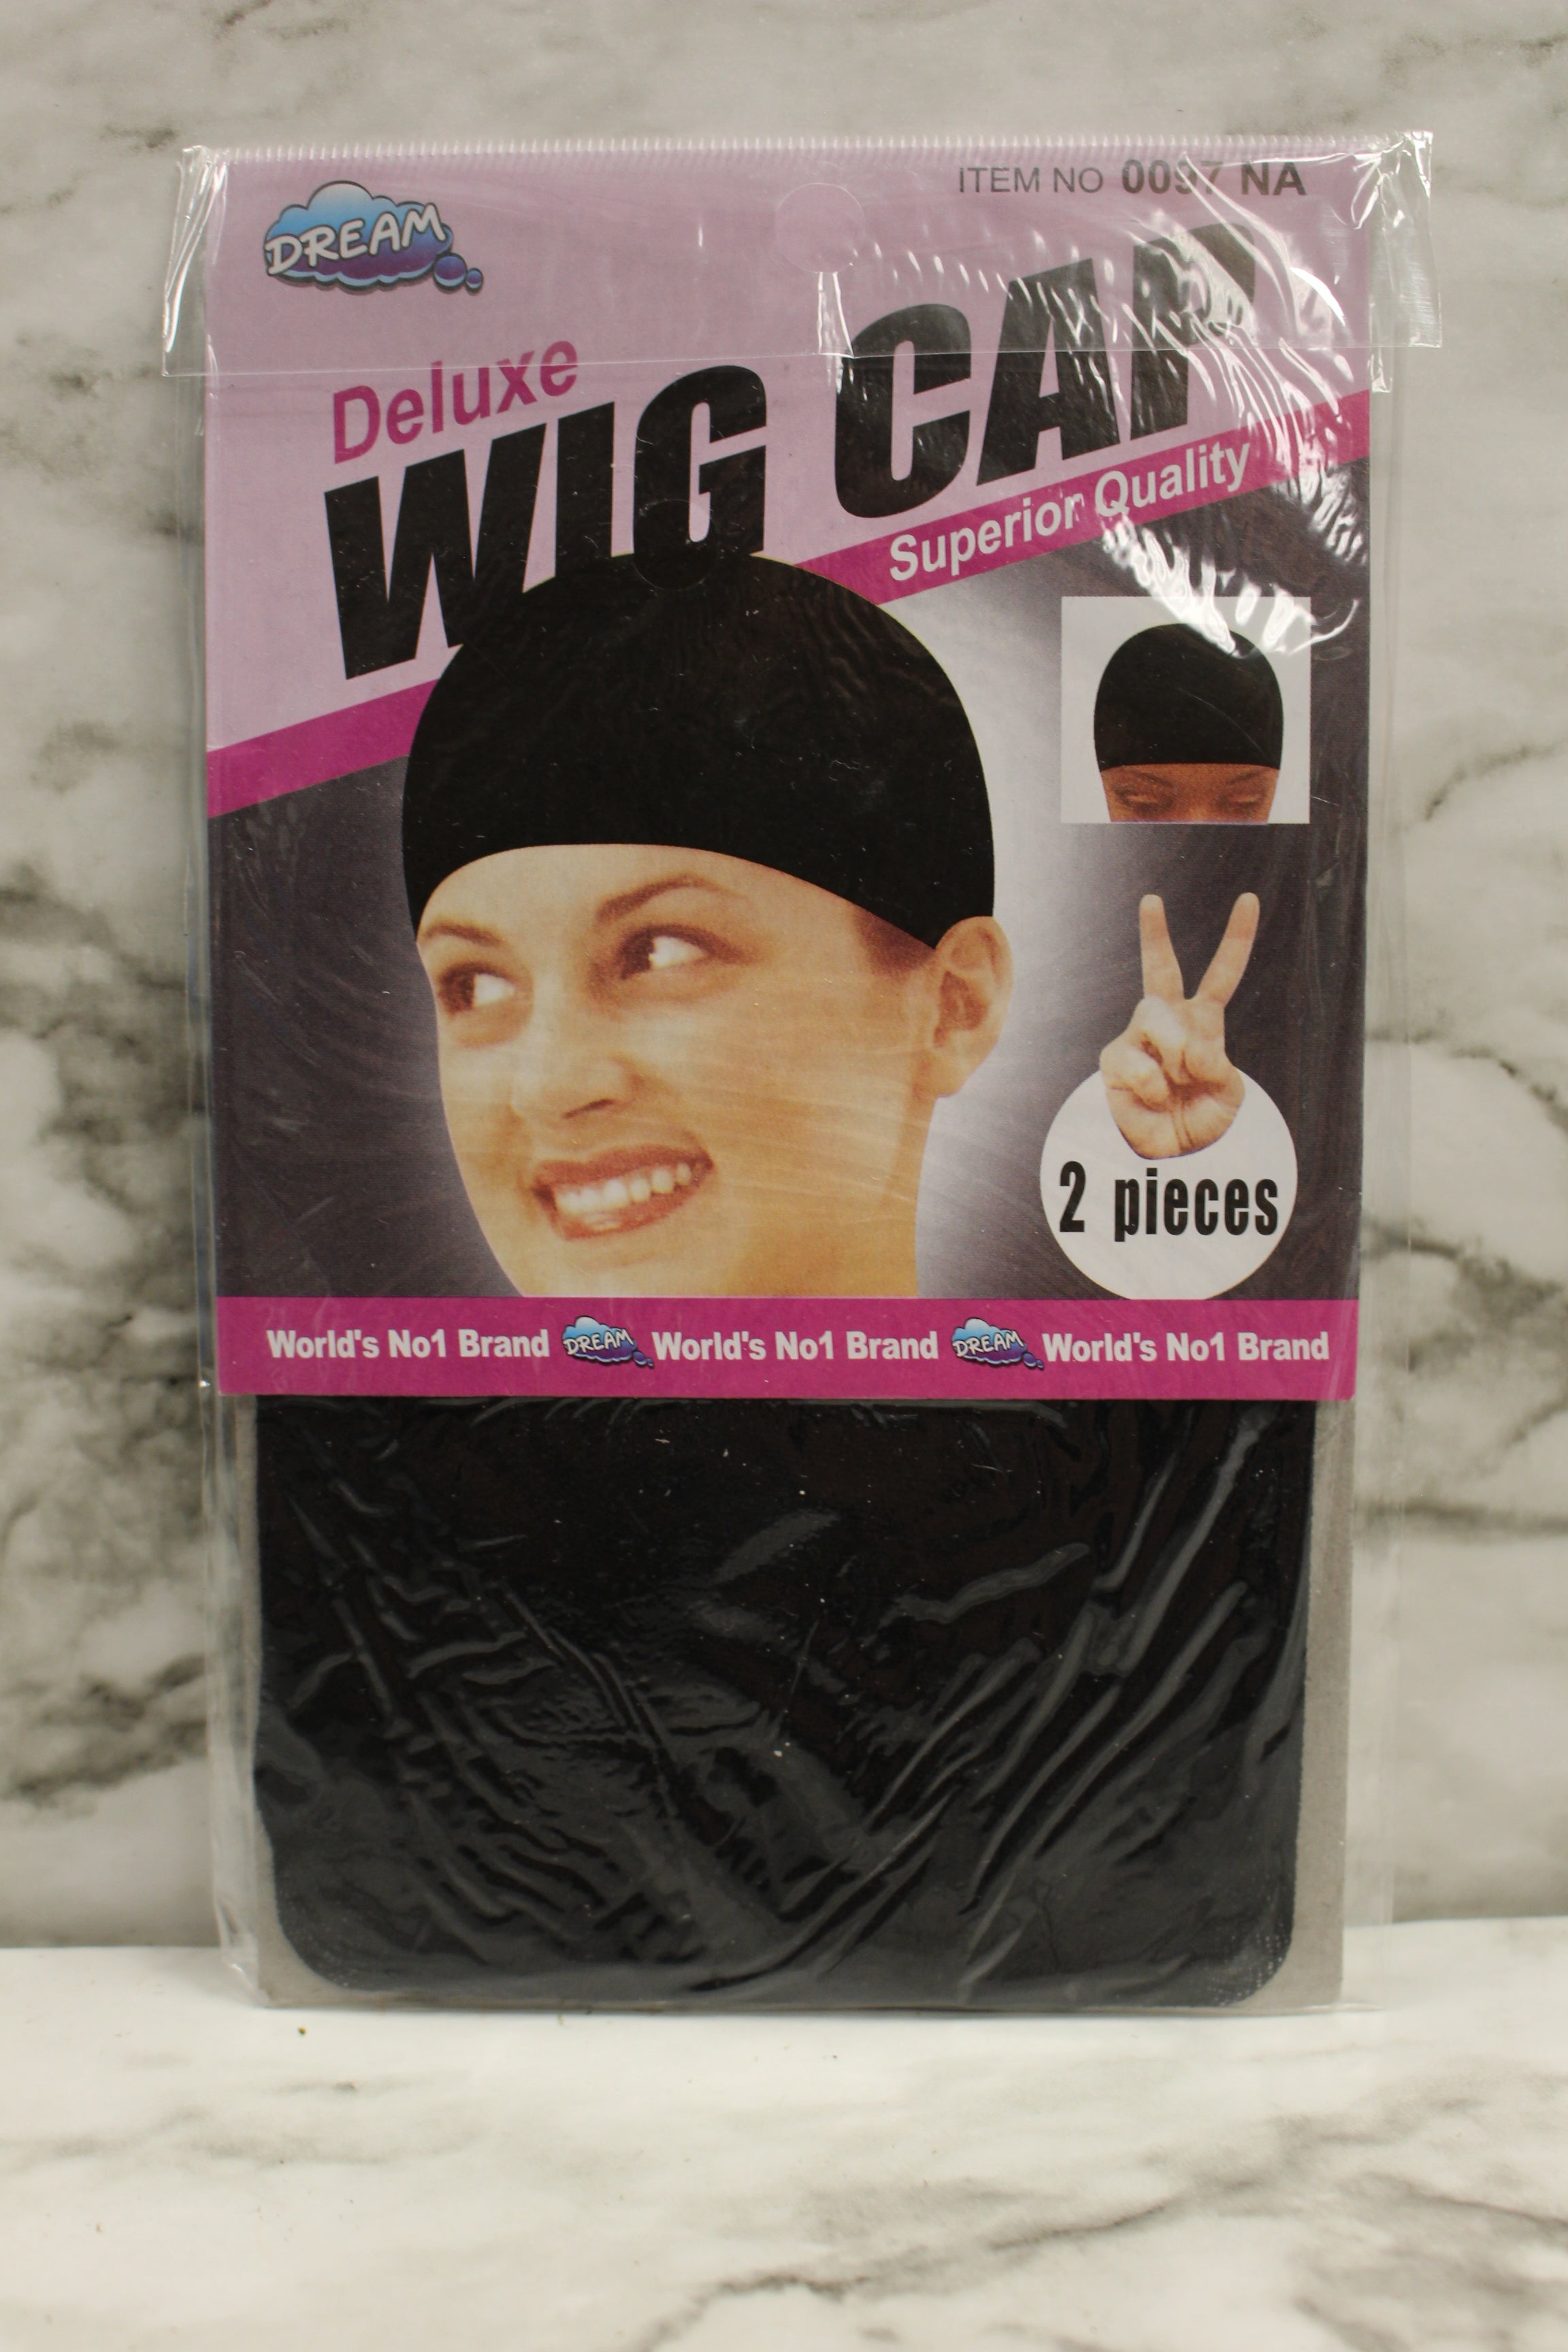 Discount Black Wig Cap